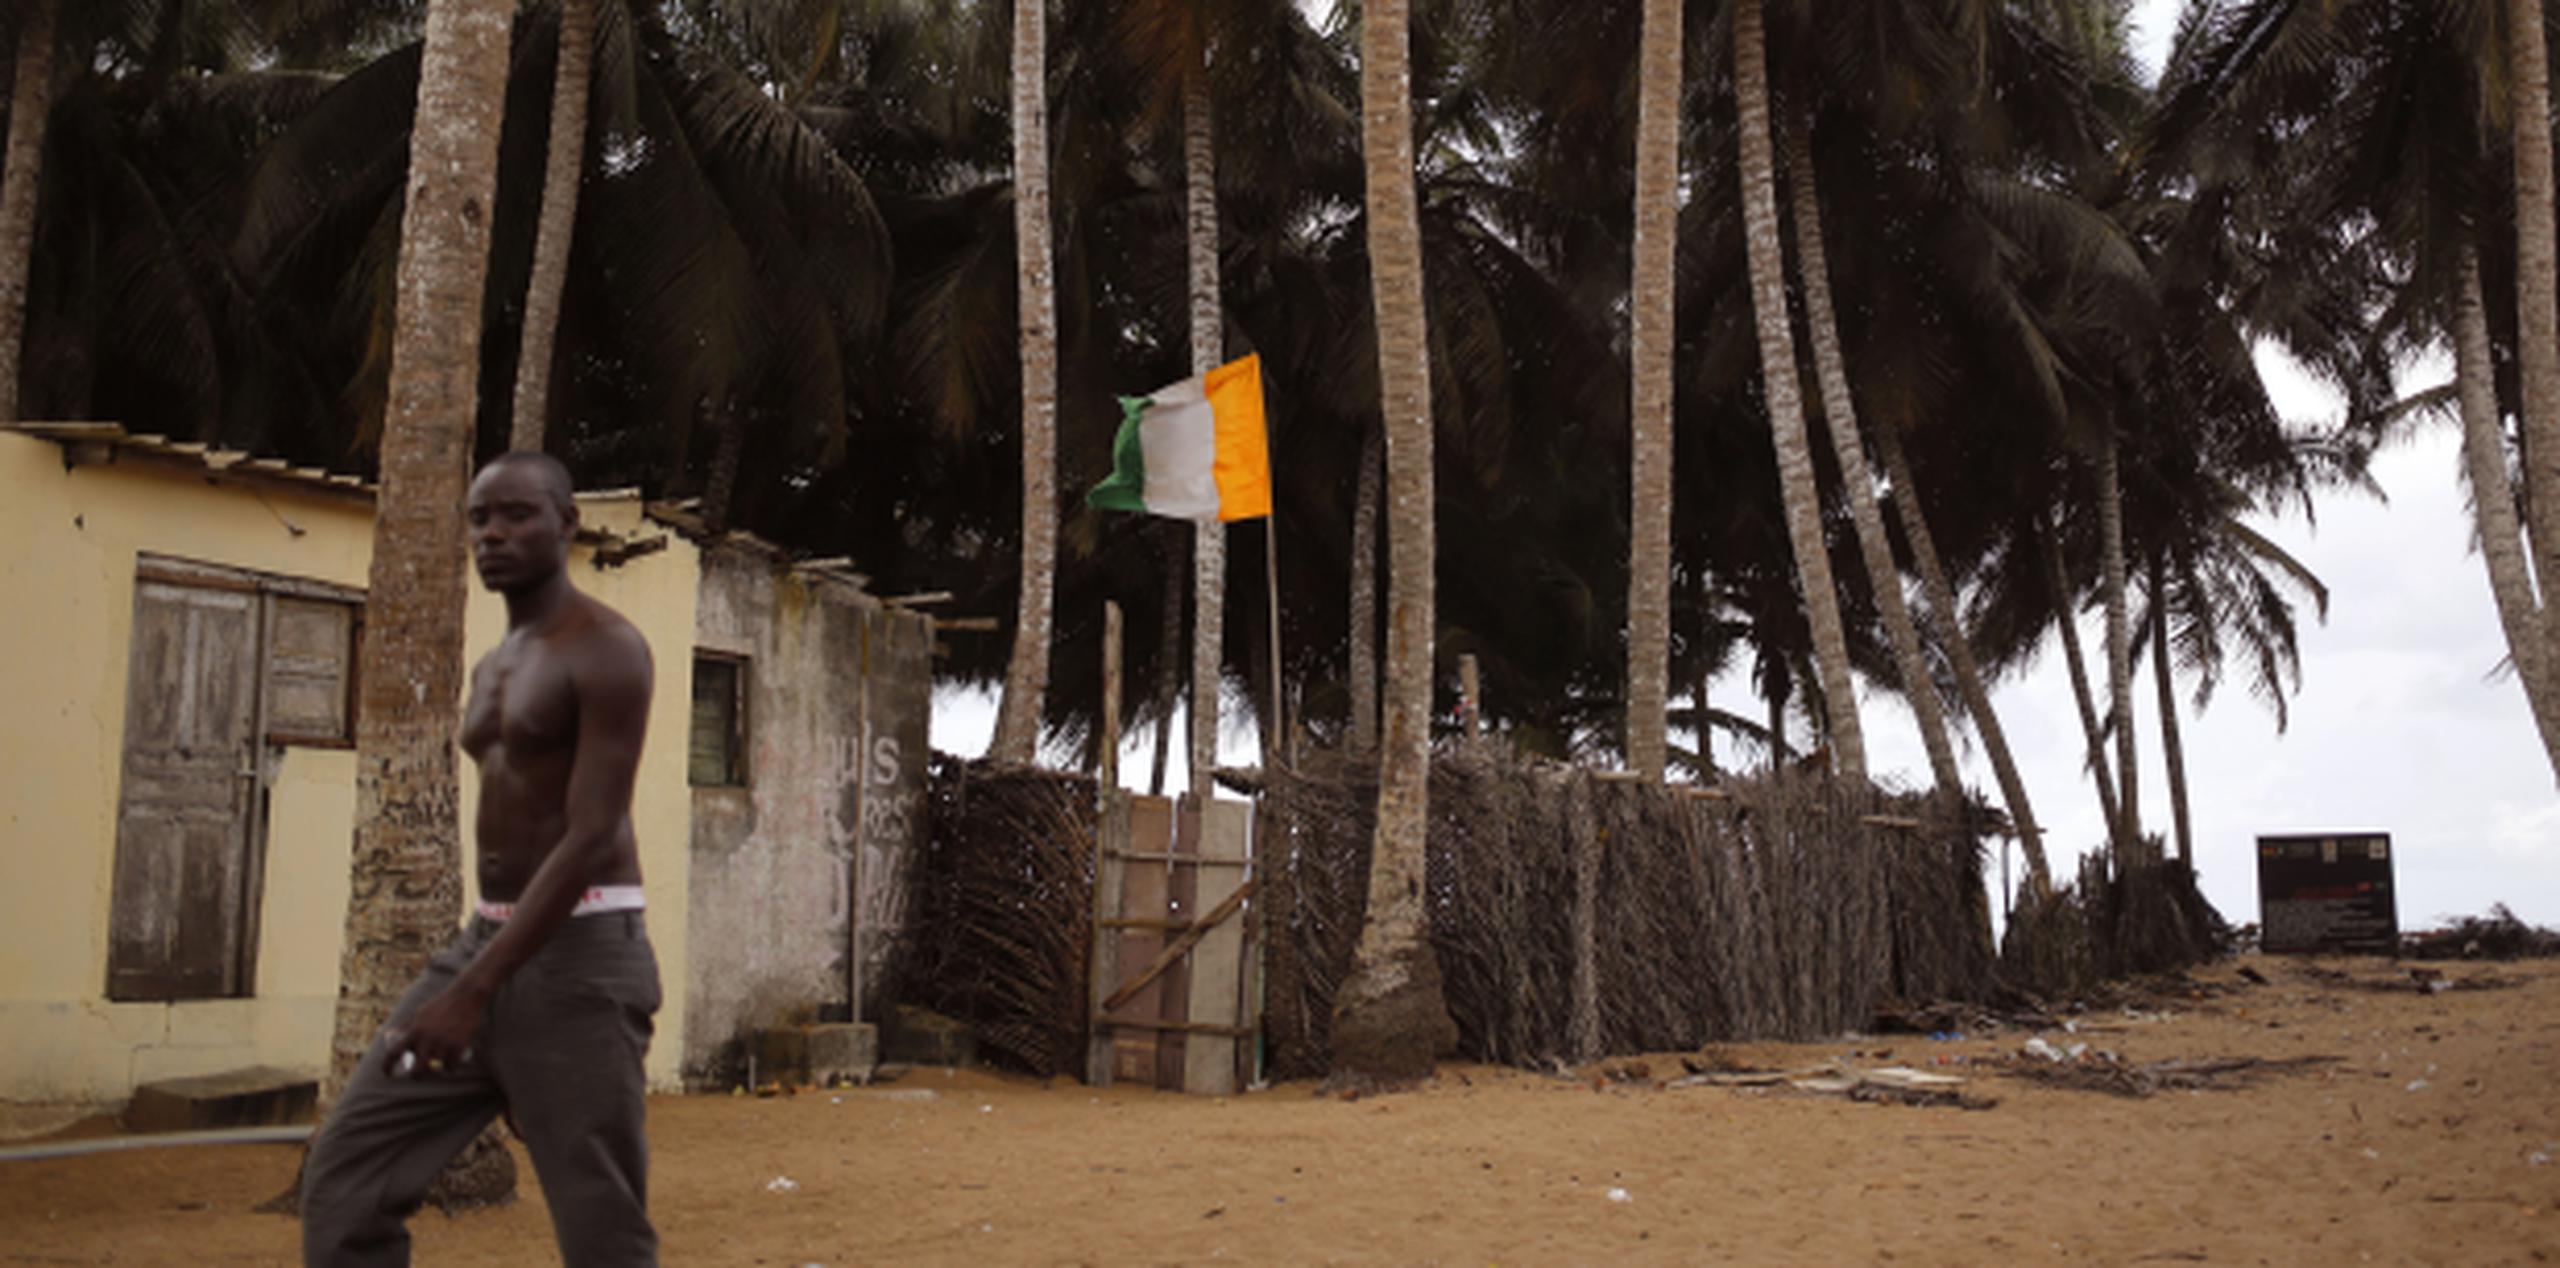 Se trata de la primera vez que Costa de Marfil, en la imagen una residencia en la playa con una bandera del país, es objetivo de un ataque de estas características. (AP)